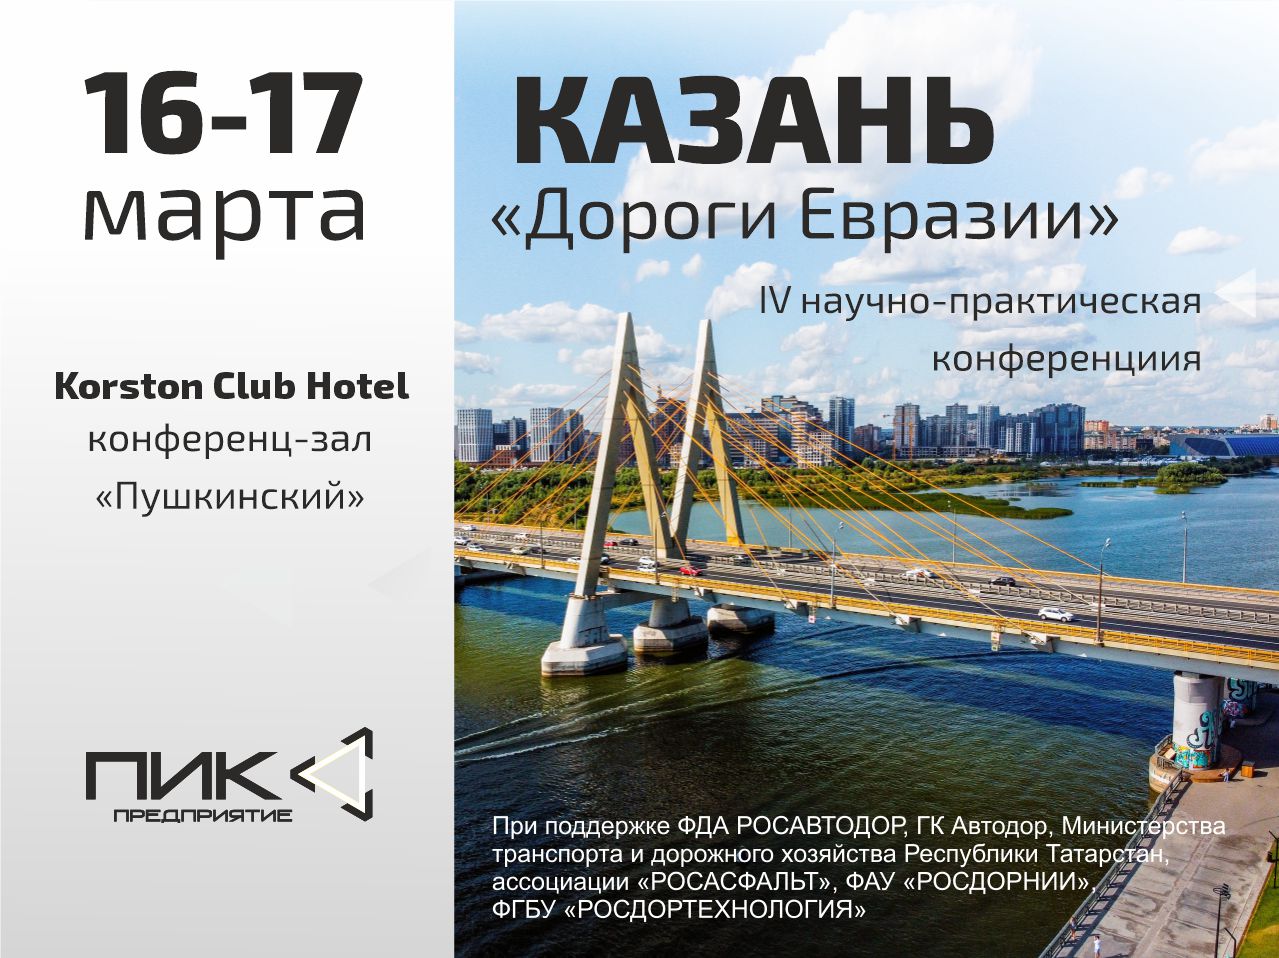 Встречаемся в Казани на конференции "Дороги Евразии"